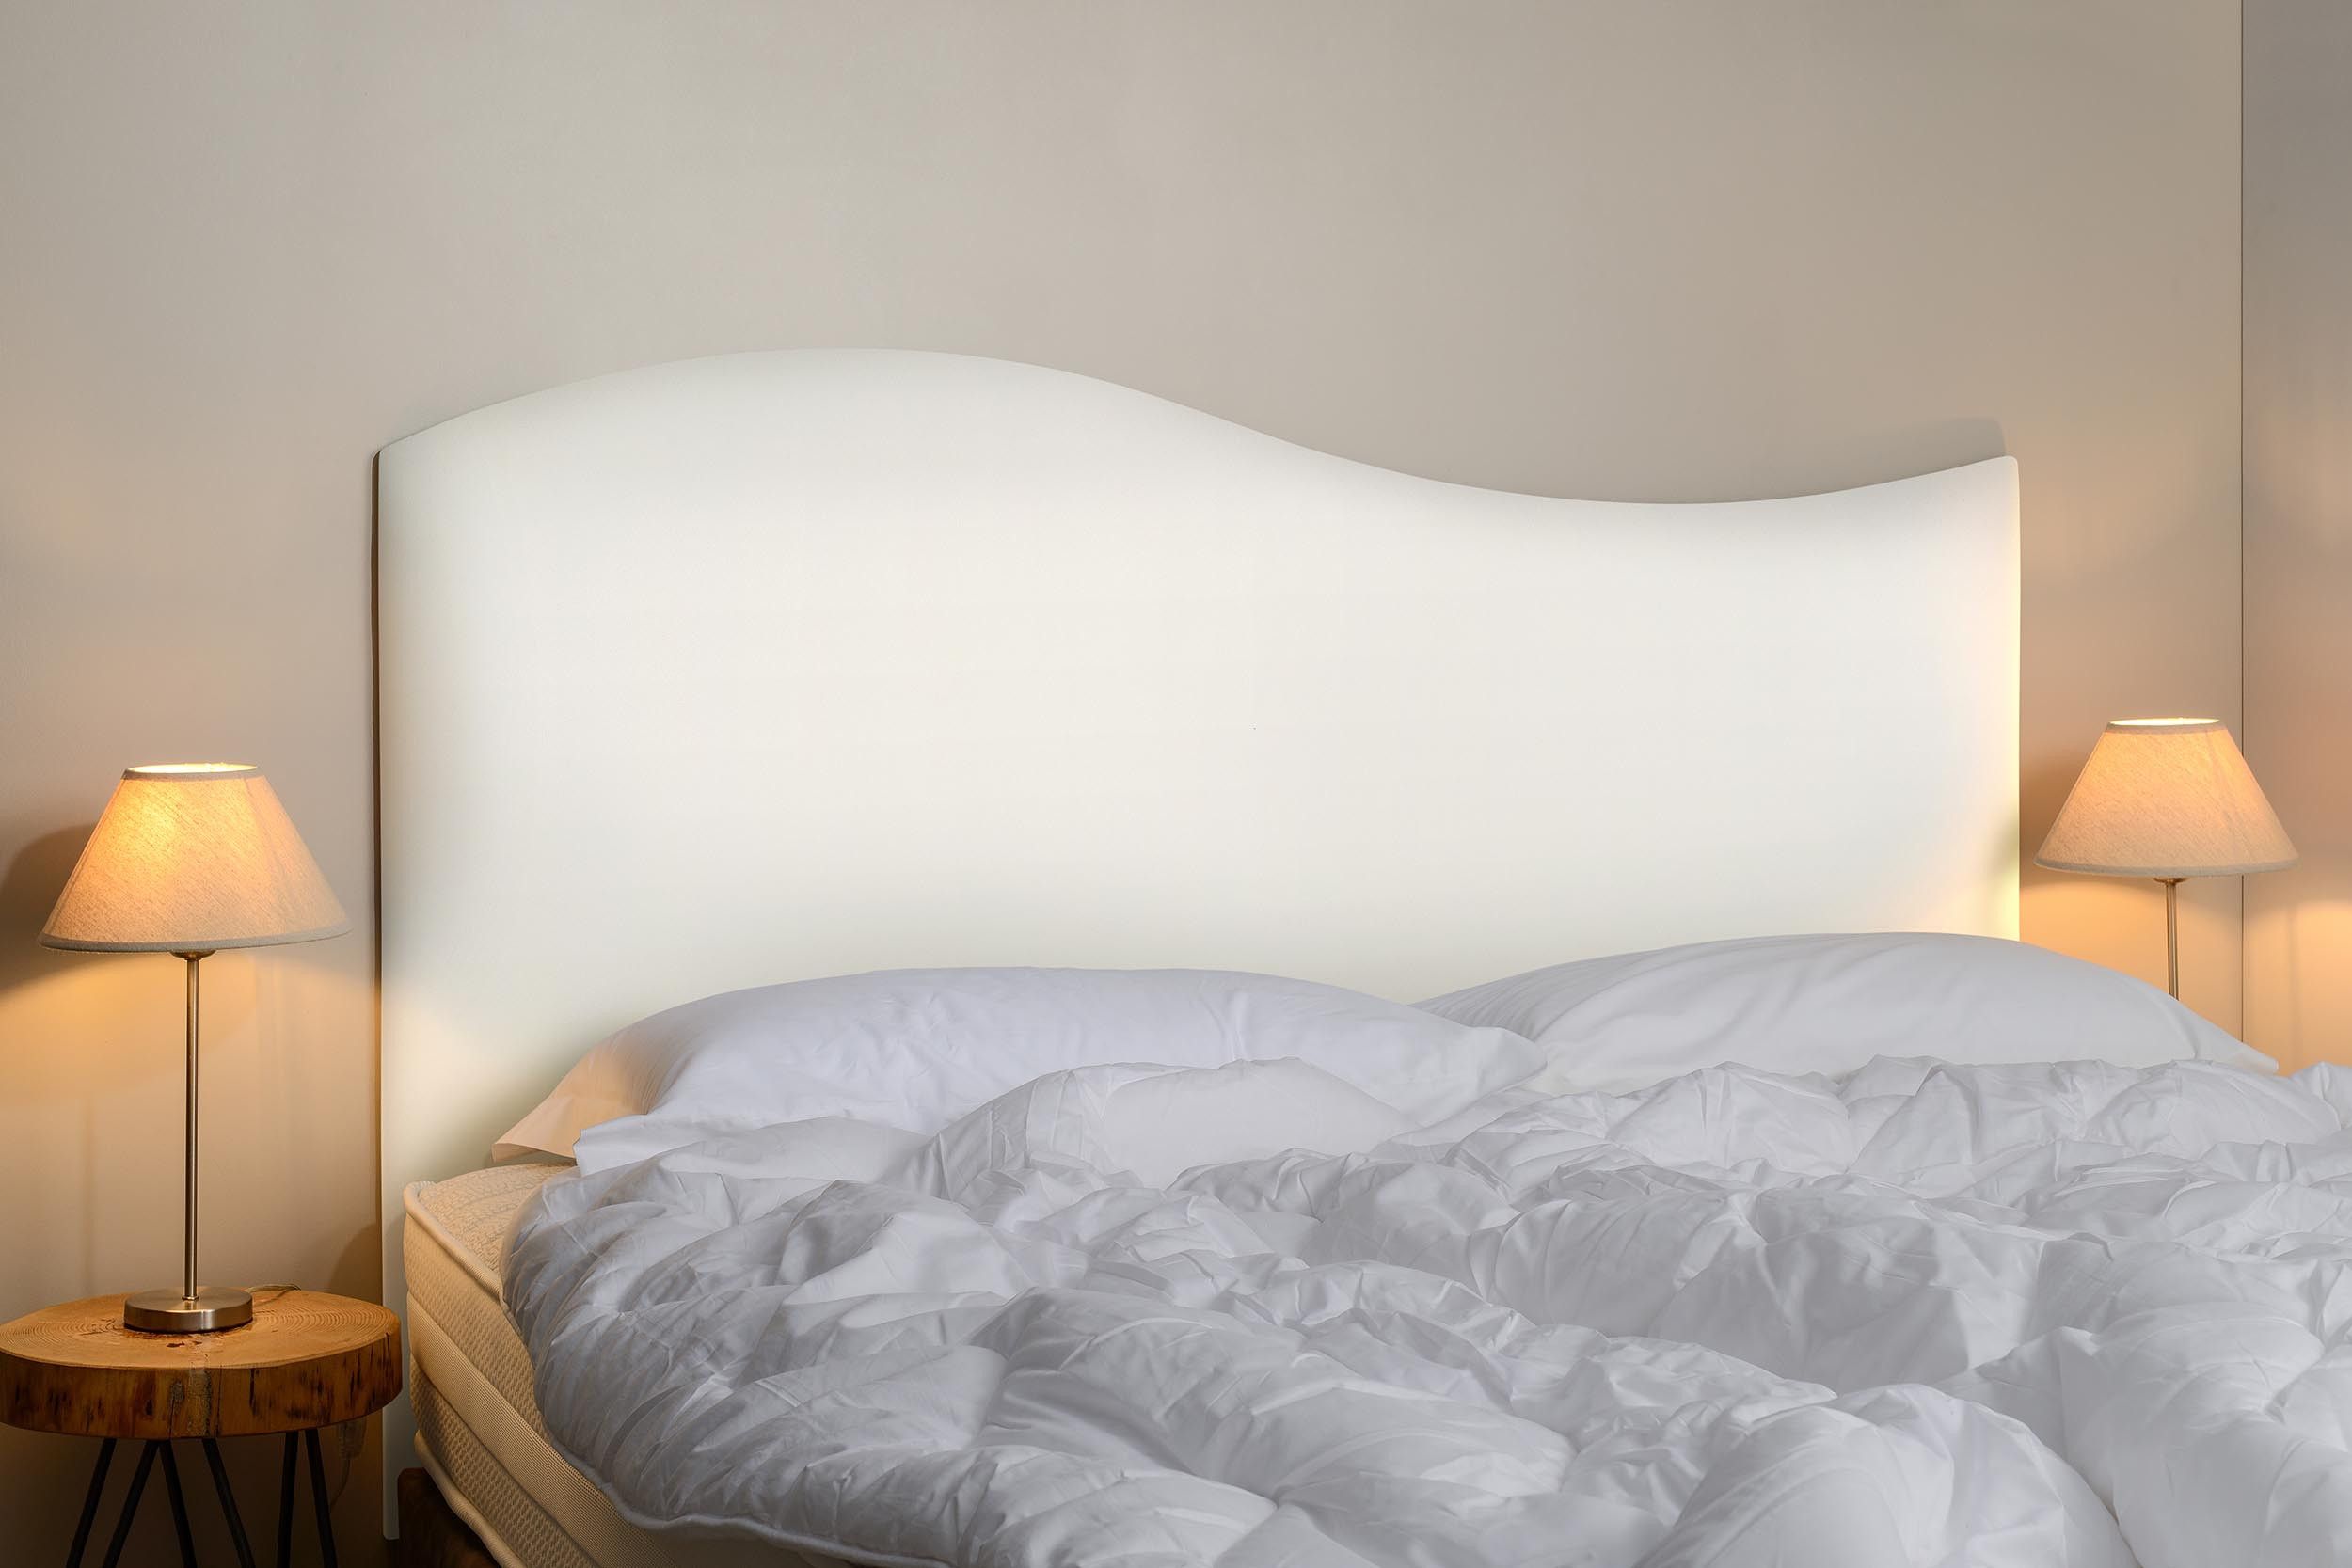 Tête de lit Tradition Créative Française – Tissu Simili cuir Blanc